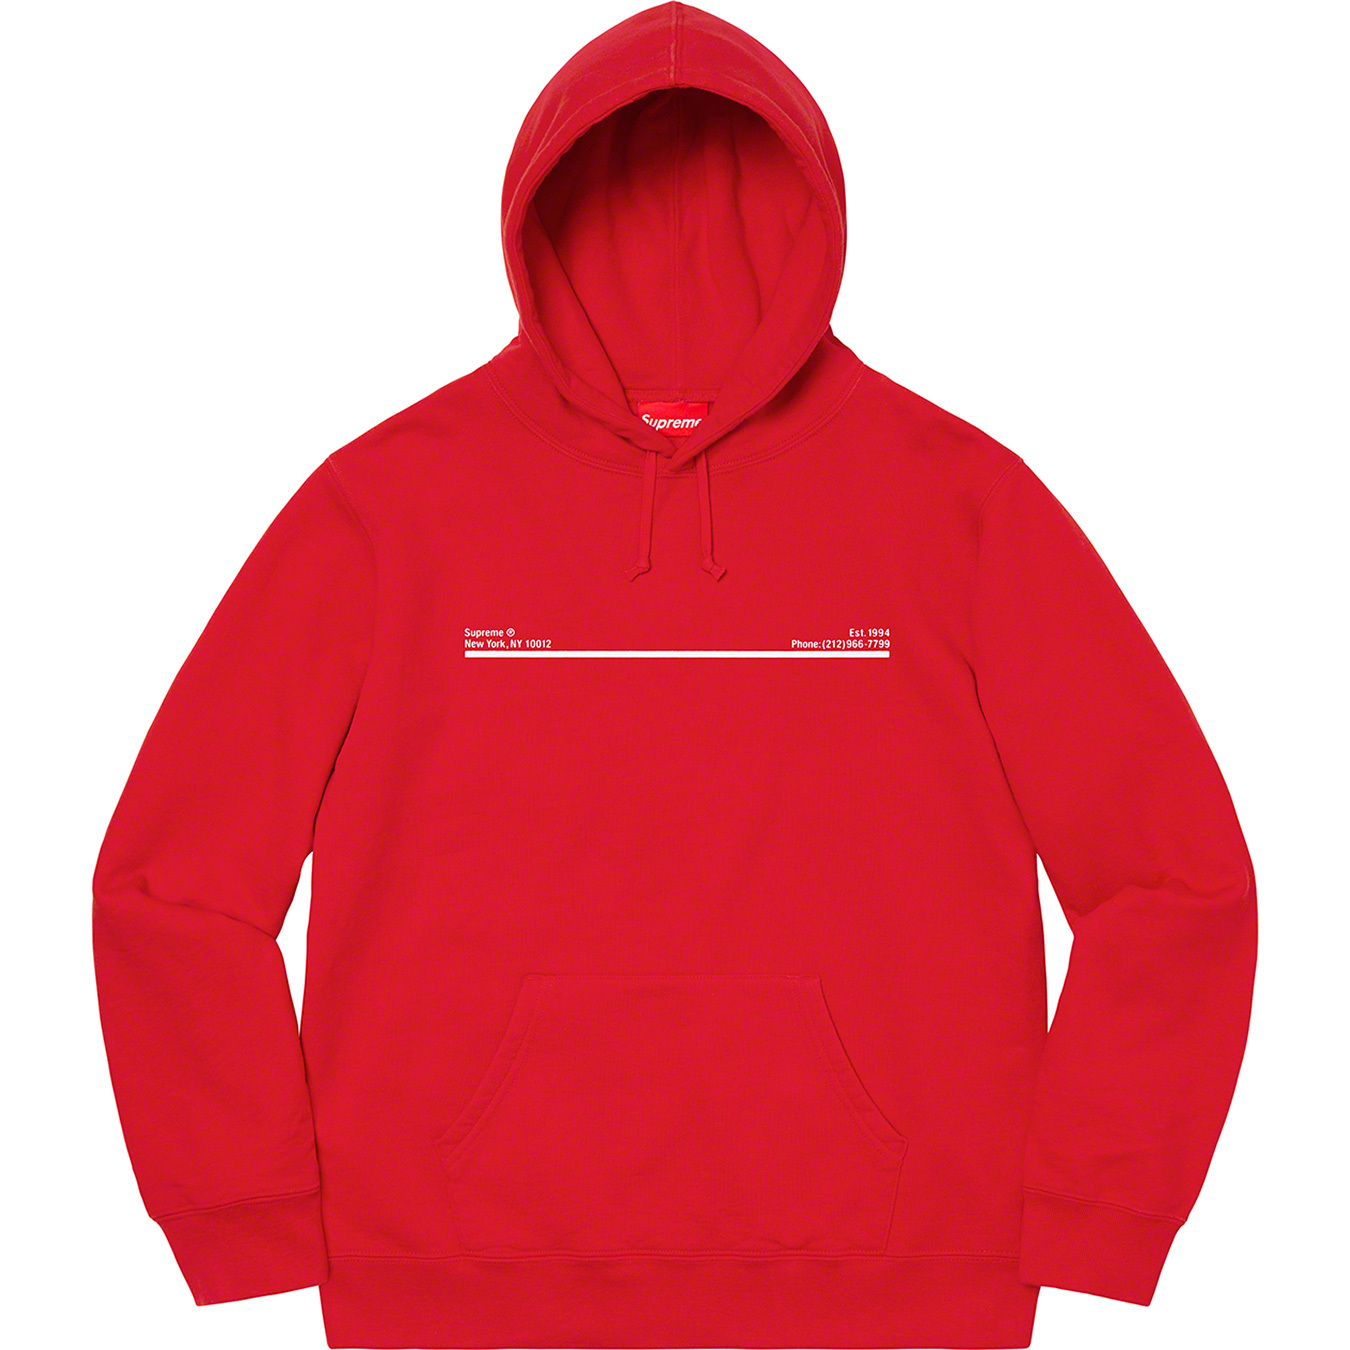 トップス パーカー Shop Hooded Sweatshirt | Supreme 20fw